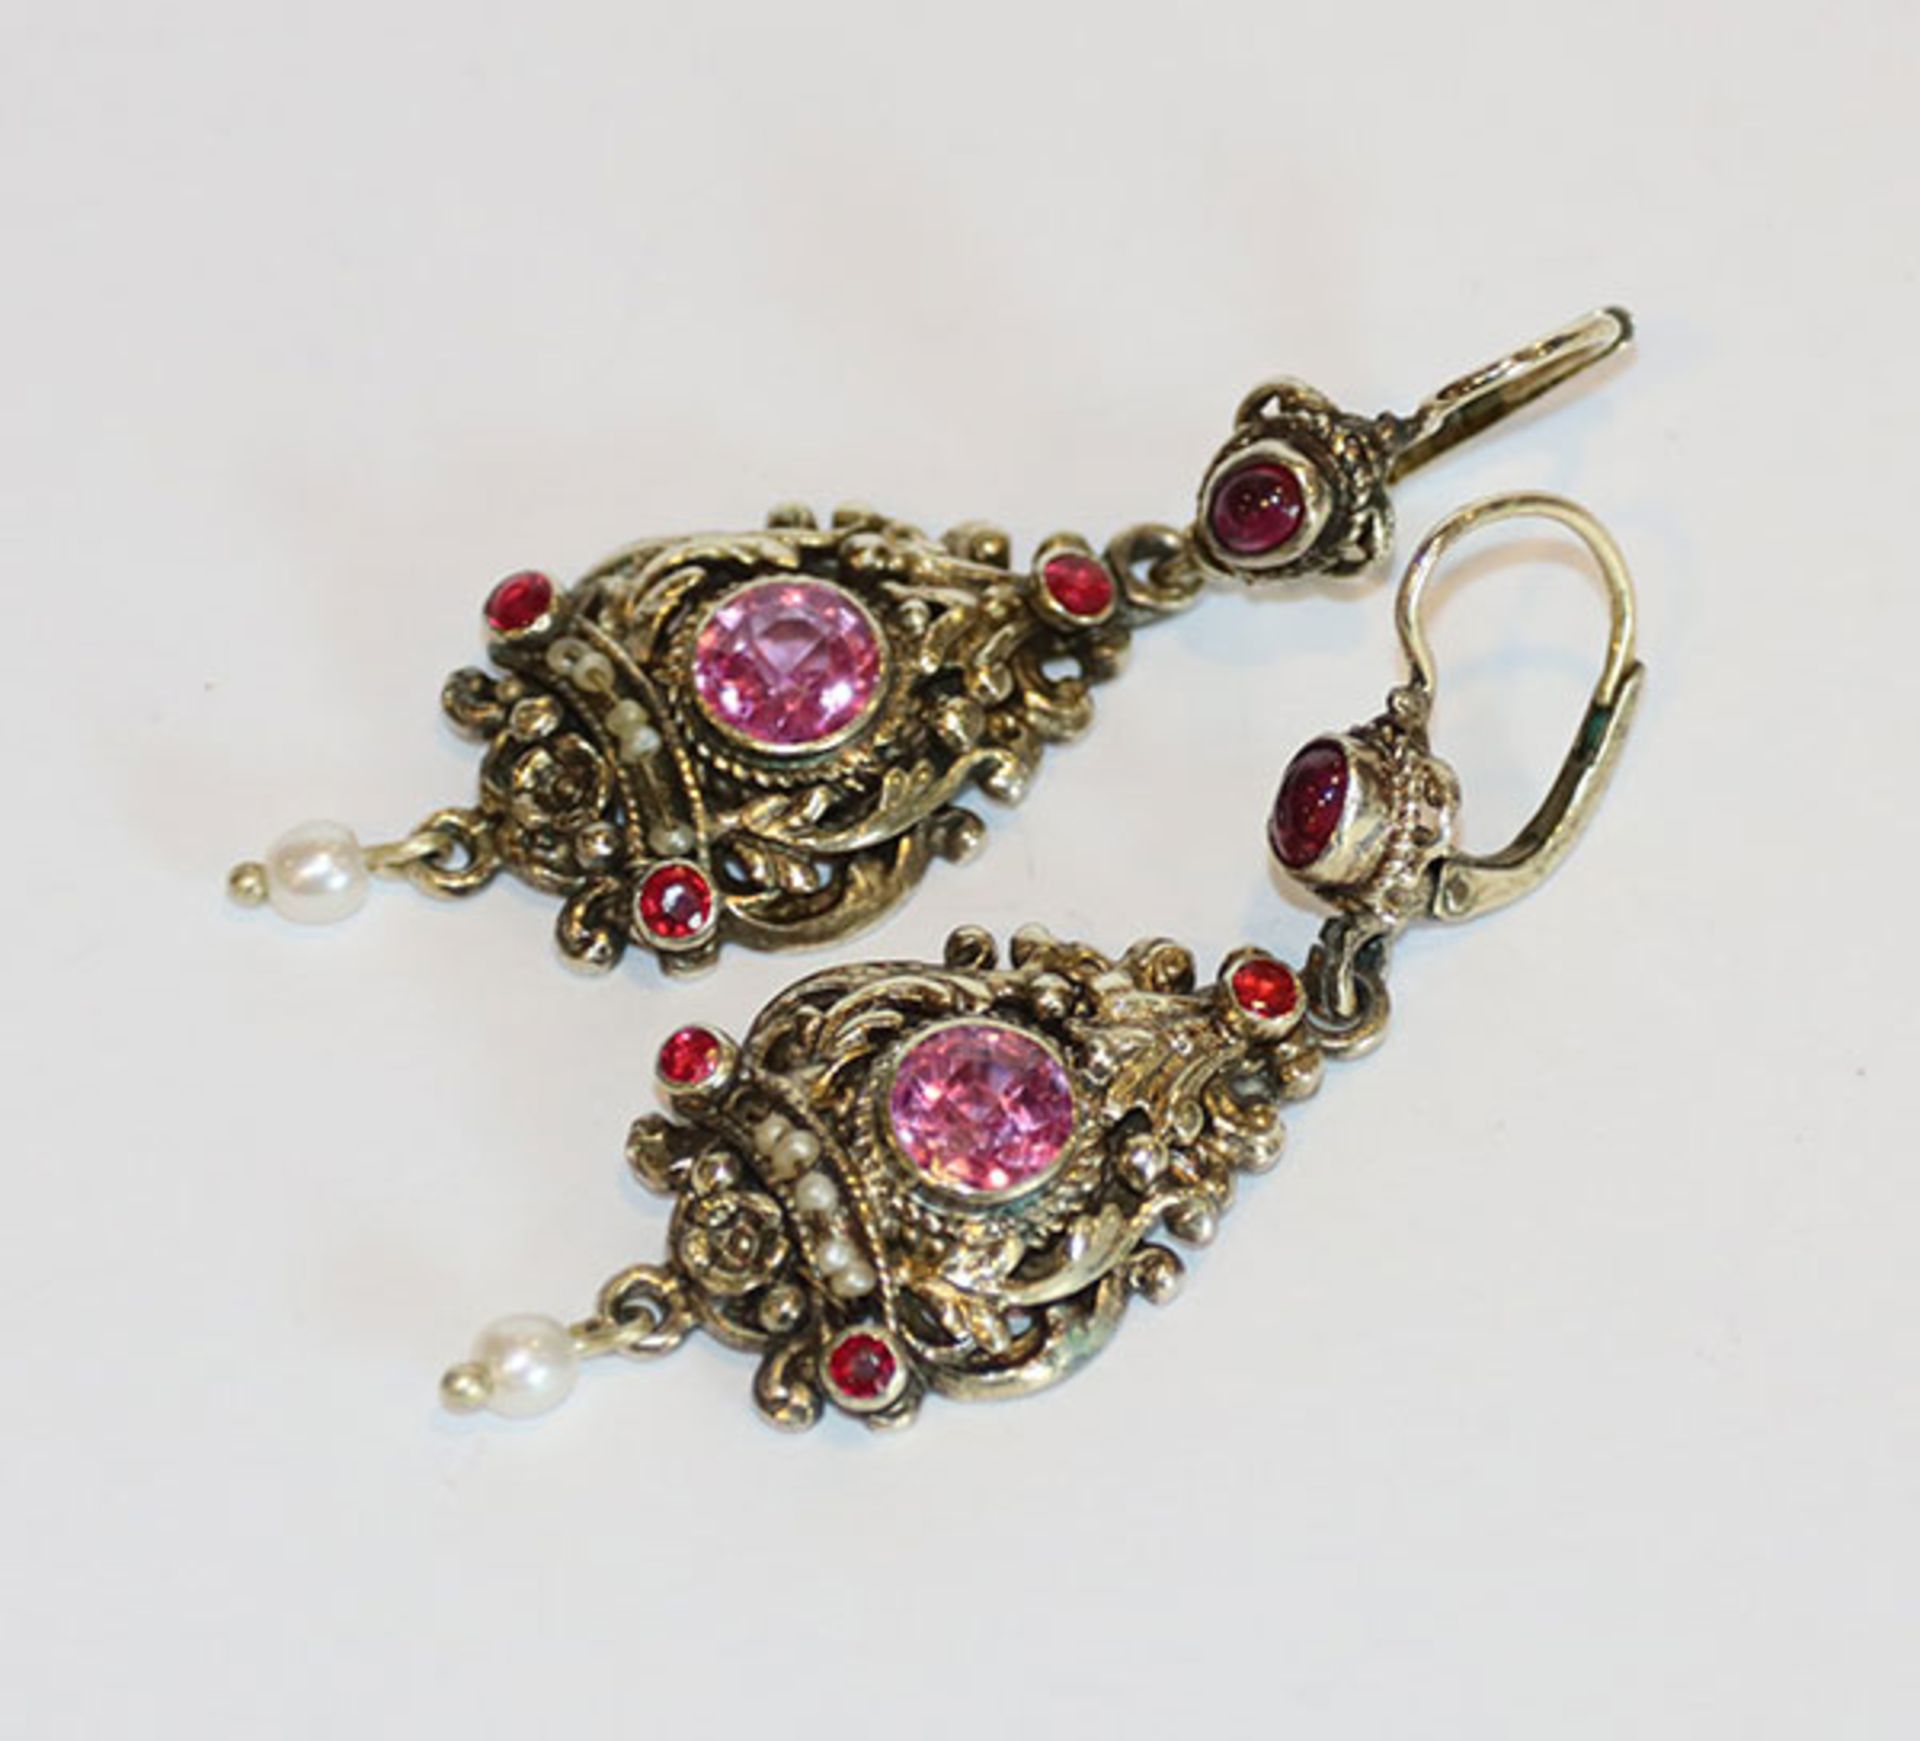 Paar Silber/vergoldete Ohrhänger mit Glassteinen und Perlchen verziert, 11 gr., L 5 cm, schöne